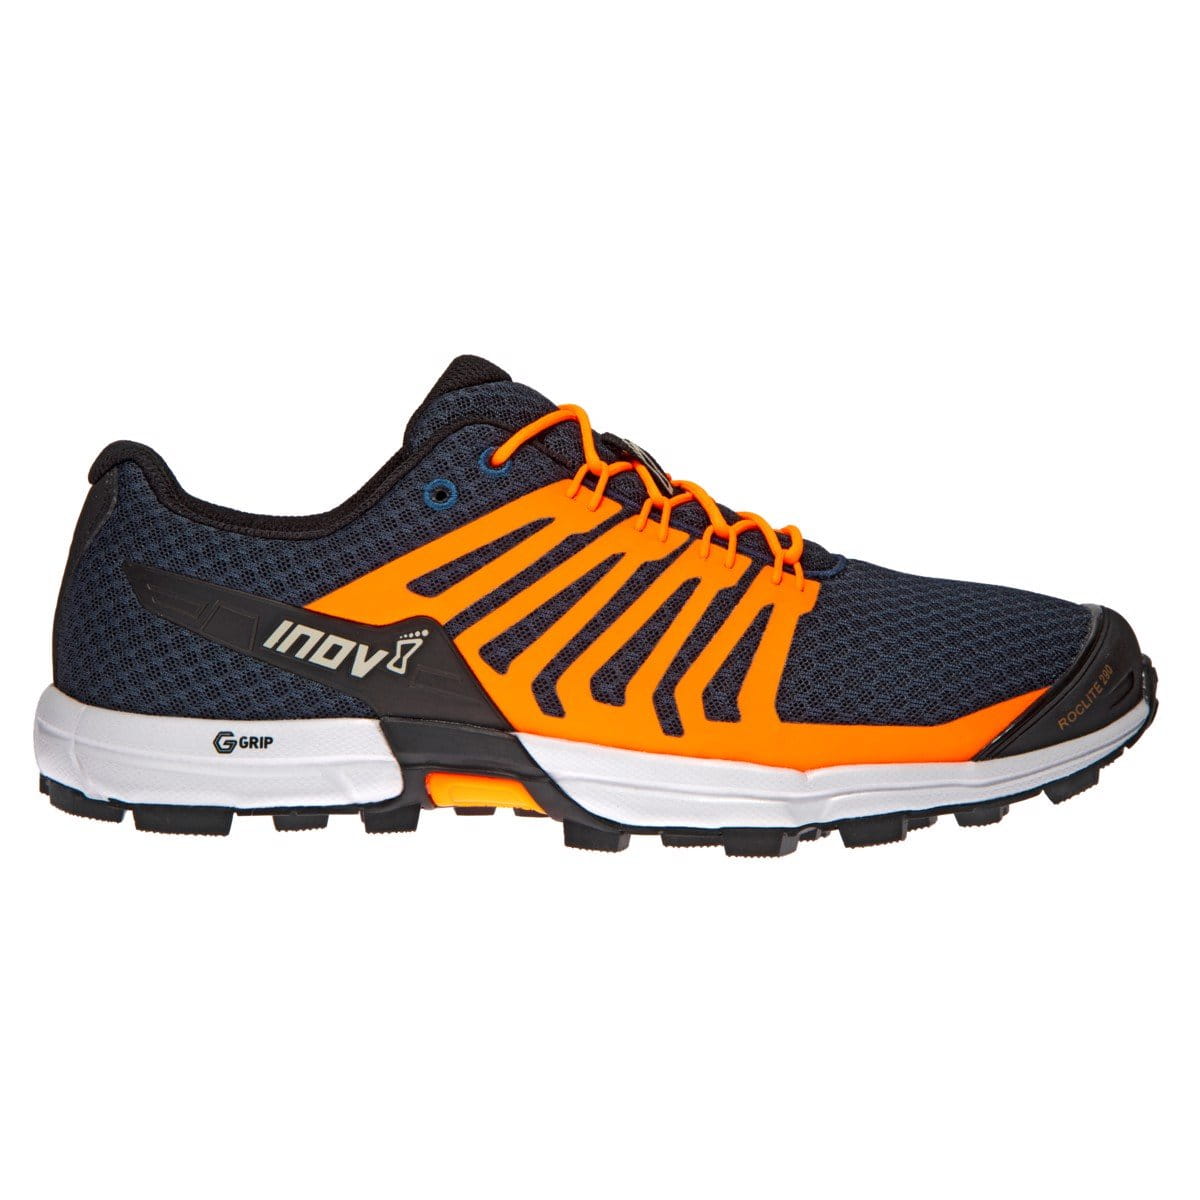 Pánské běžecké boty Inov-8  ROCLITE 290 M (M) navy/orange modrá/oranžová